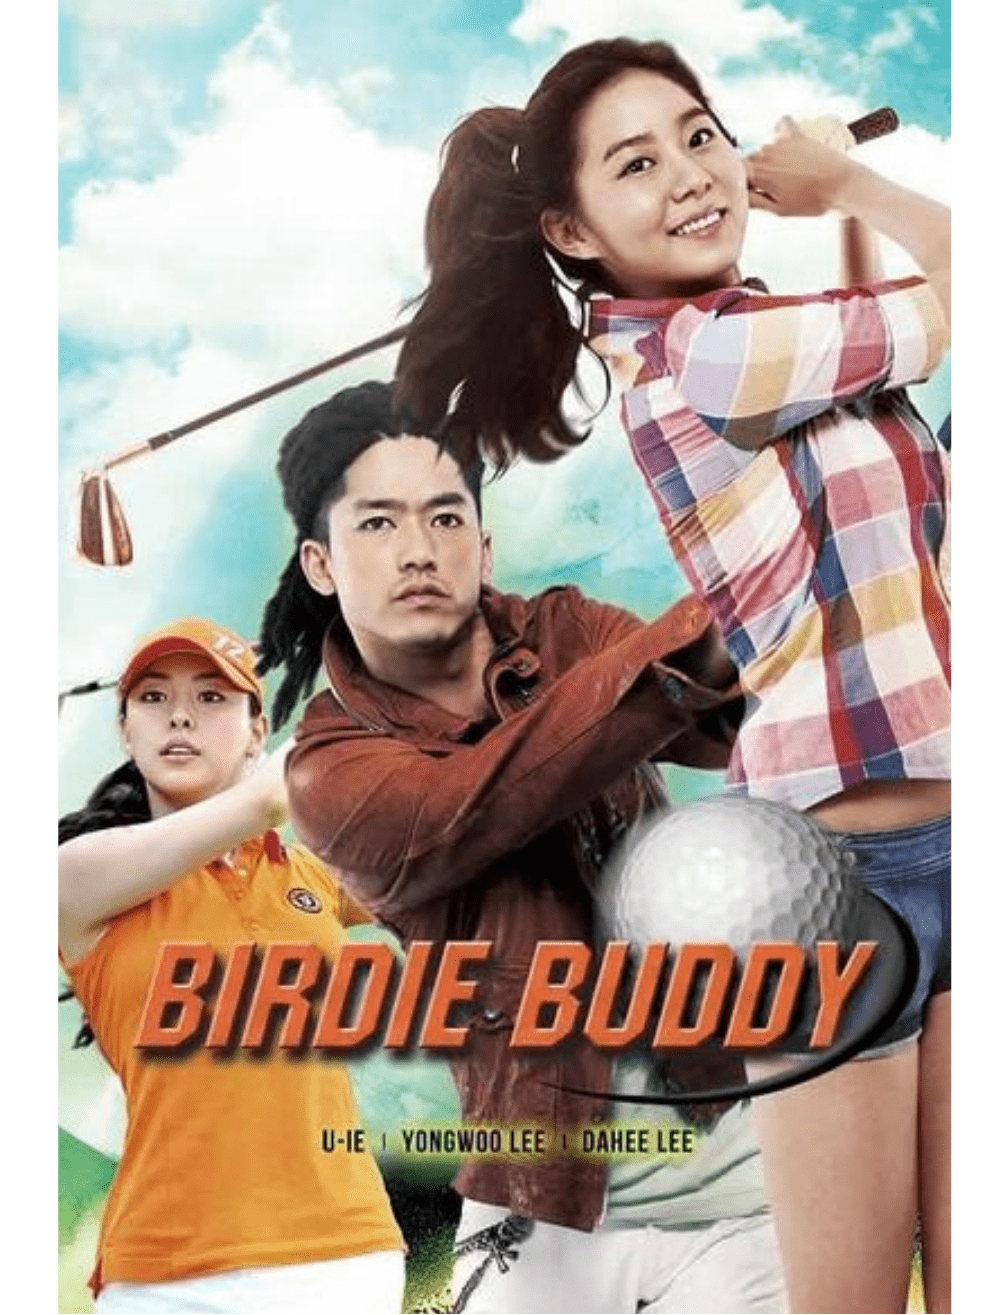 Birdie Buddy